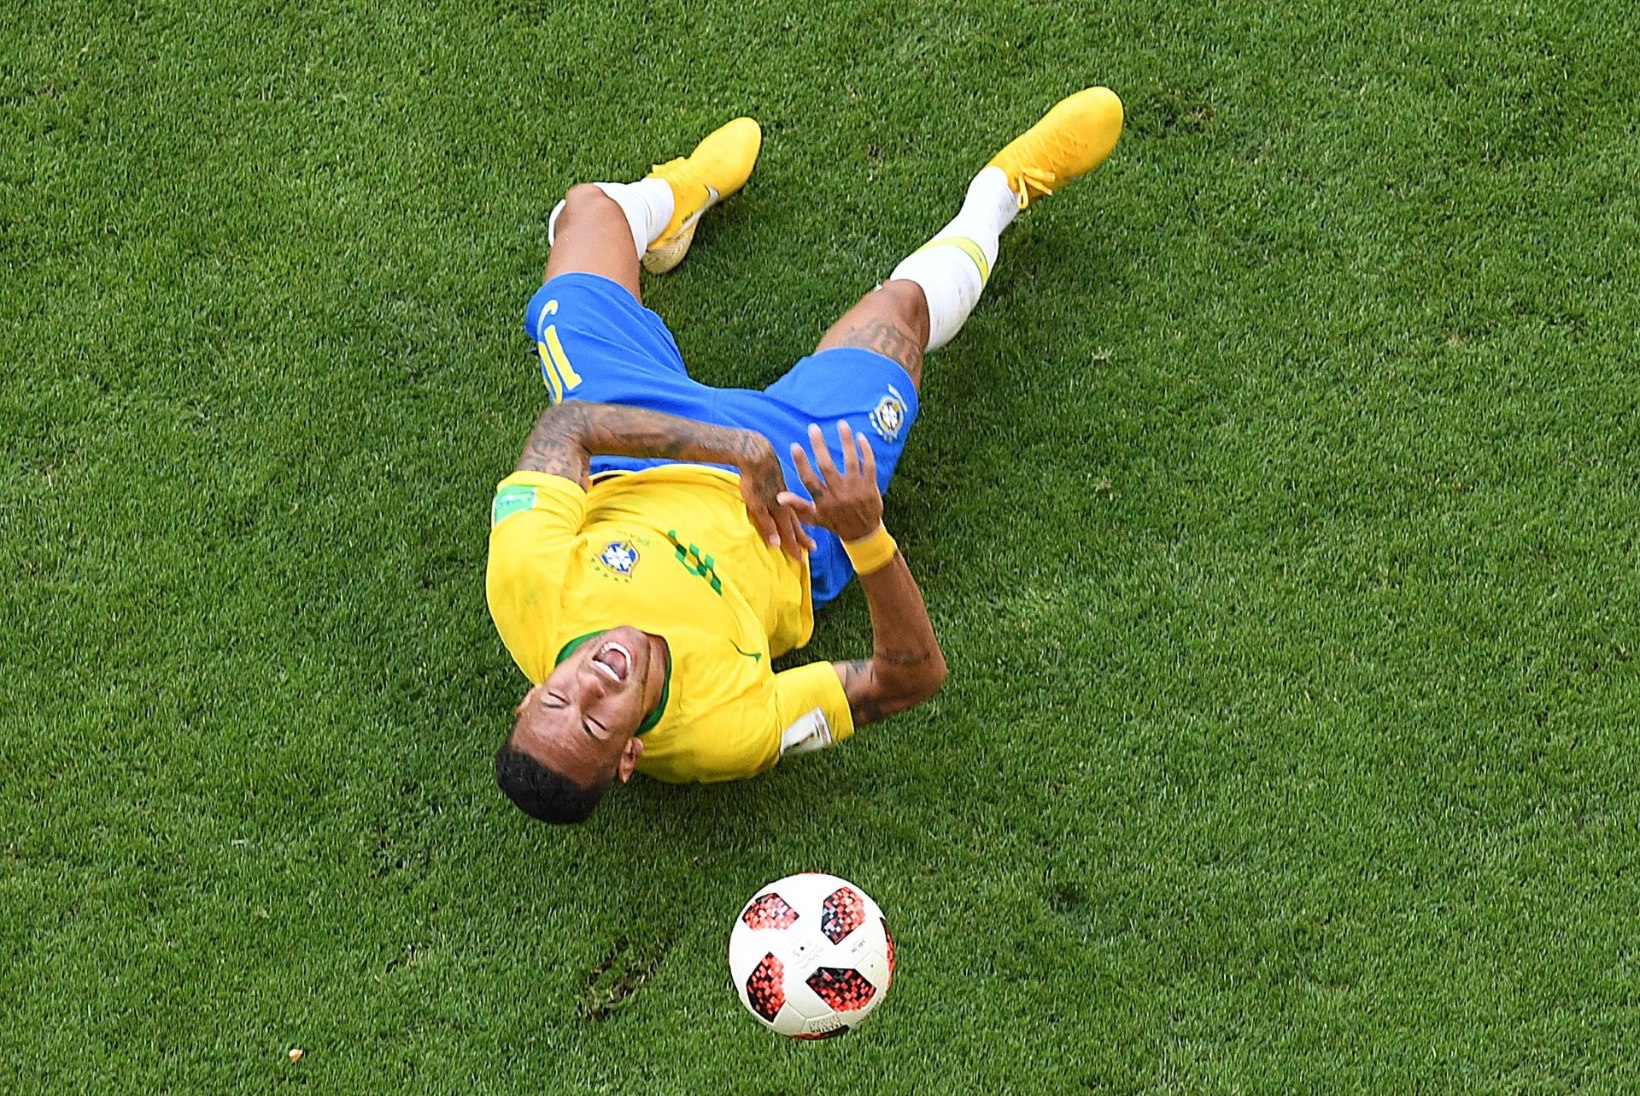 Neymar: kas tõesti arvate, et mulle meeldib, kui neid vigu tehakse? Ei, see on valus!